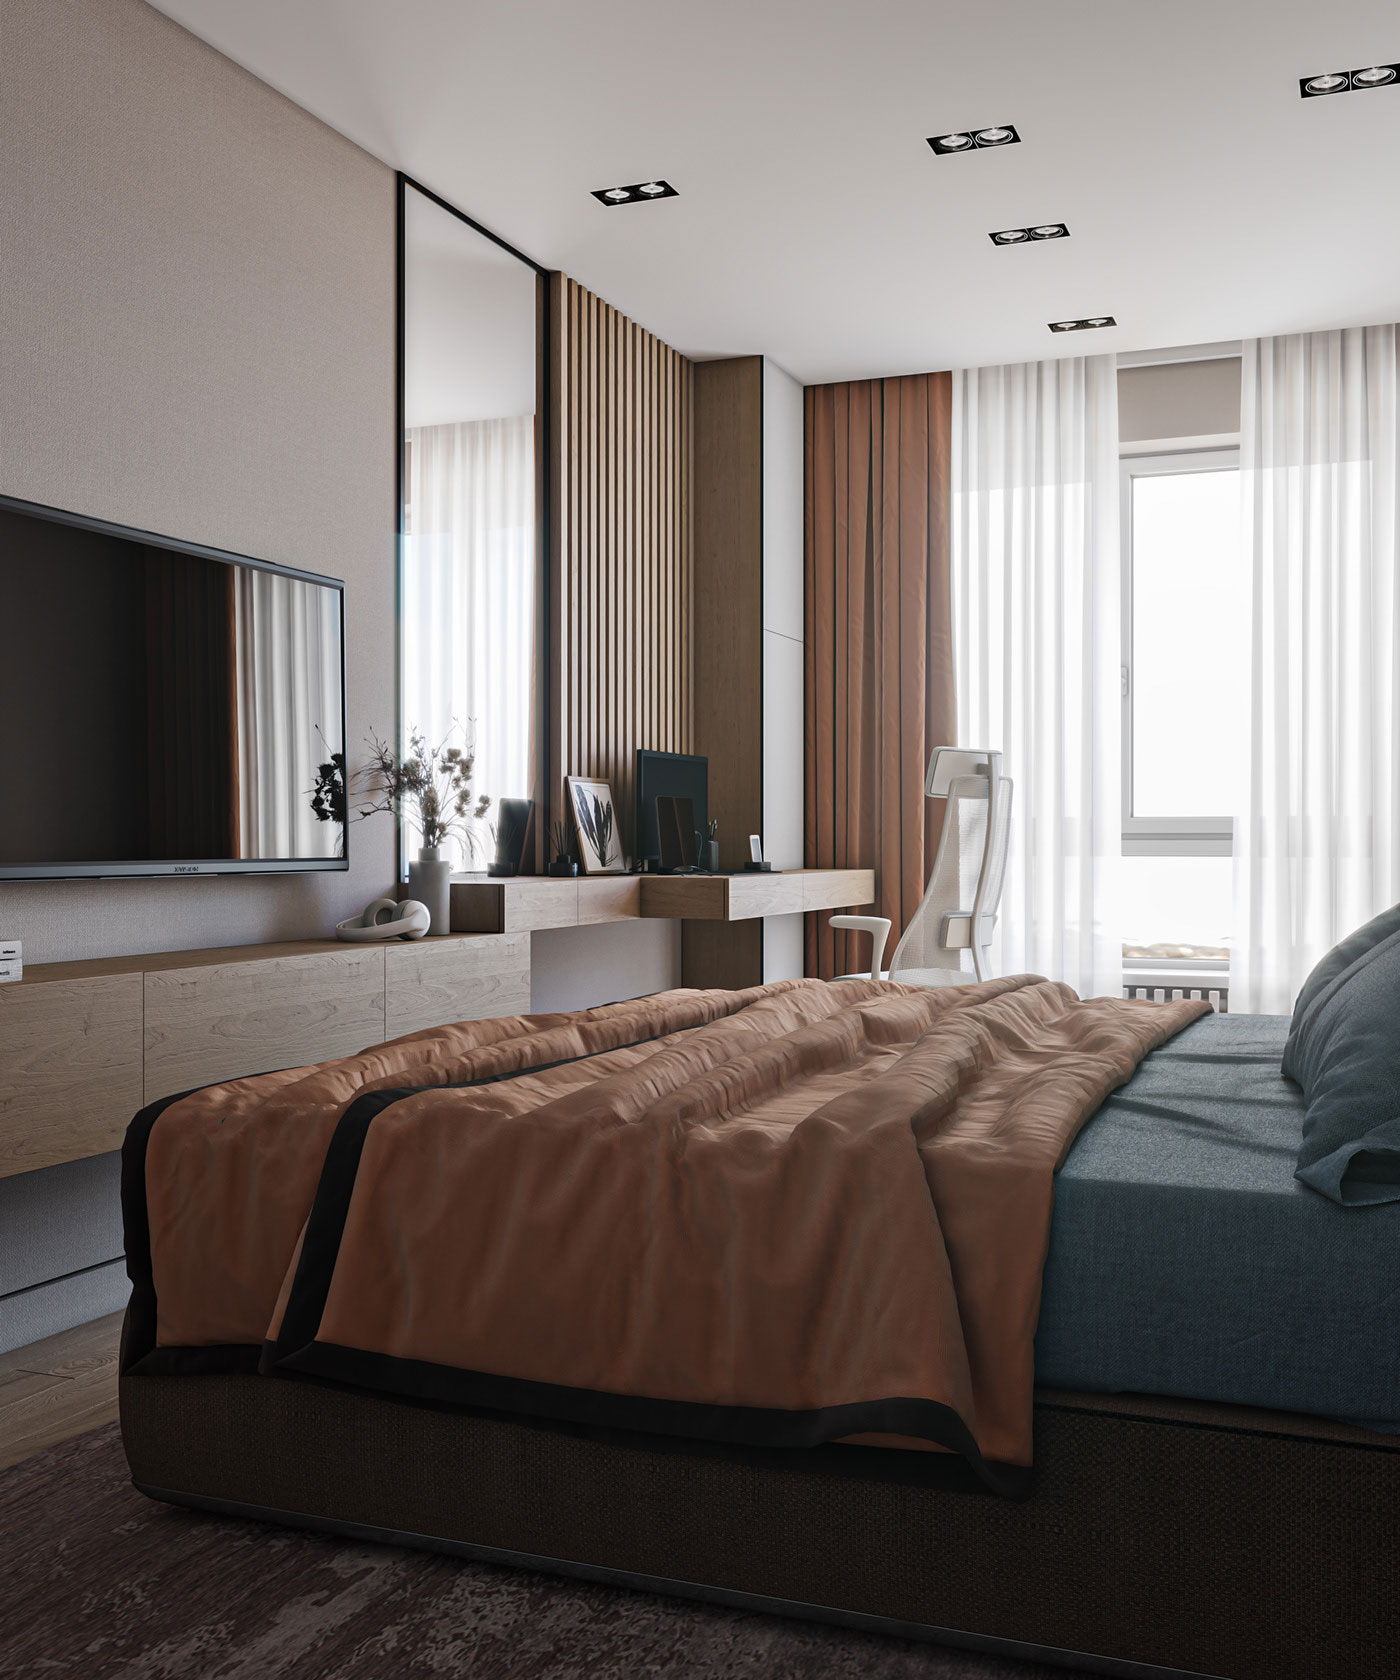 Phòng ngủ tông màu trung tính sẽ là điểm đặc trưng của phong cách thiết kế đương đại